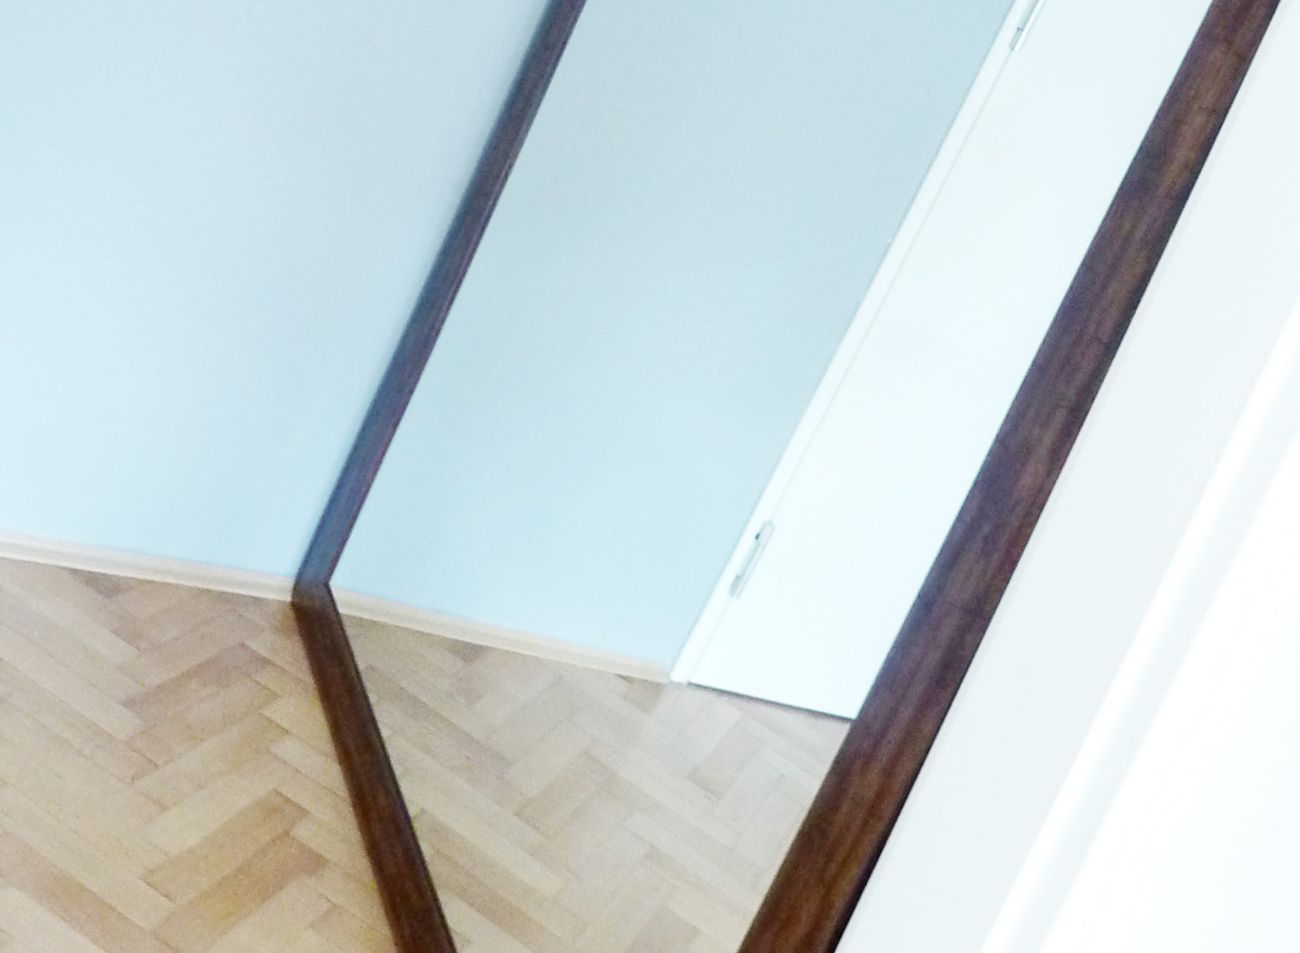 Velké XXL zrcadlo v dřevěném rámu opřené o zeď v interiéru moderní kanceláře | © Frameit